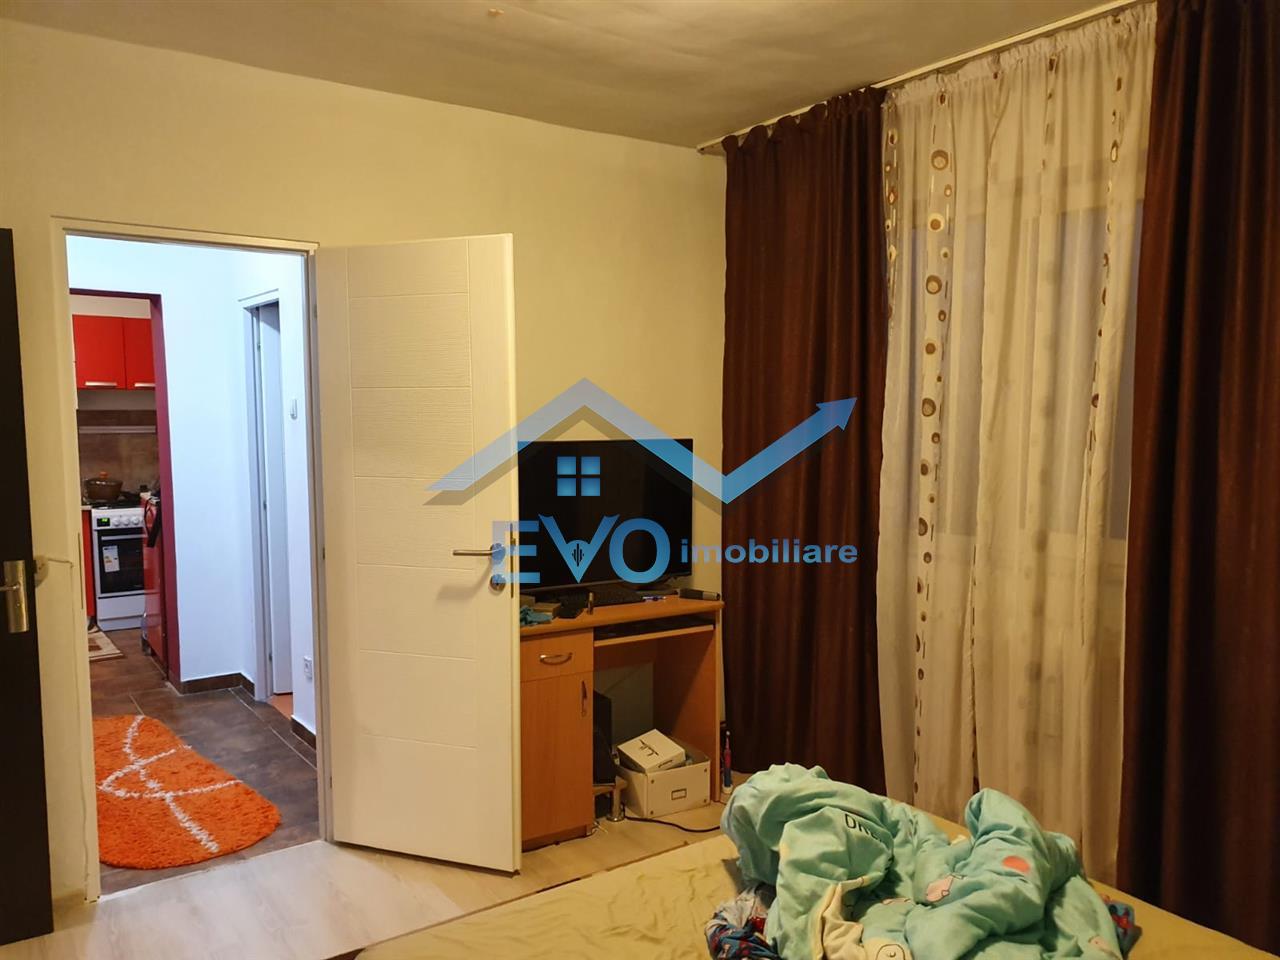 Vanzare apartament nou 2 camere decomandat Galata, apartamente de vanzare Galata, agentii imobiliare iasi